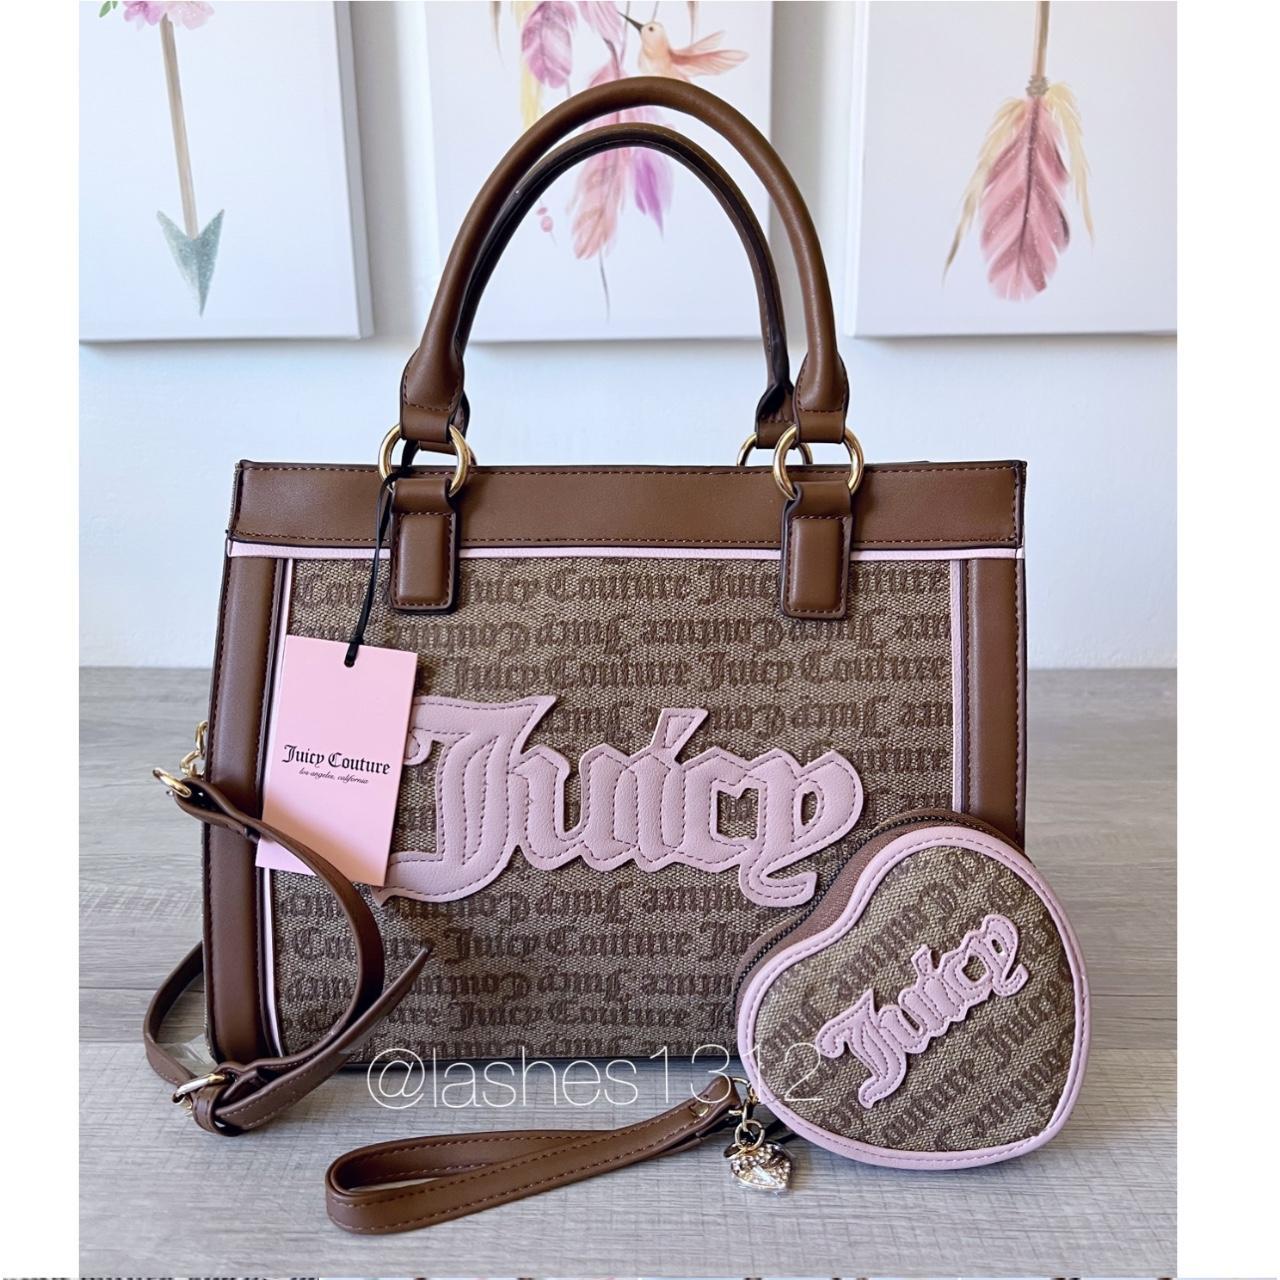 Women's Juicy Couture Handbags, Bags